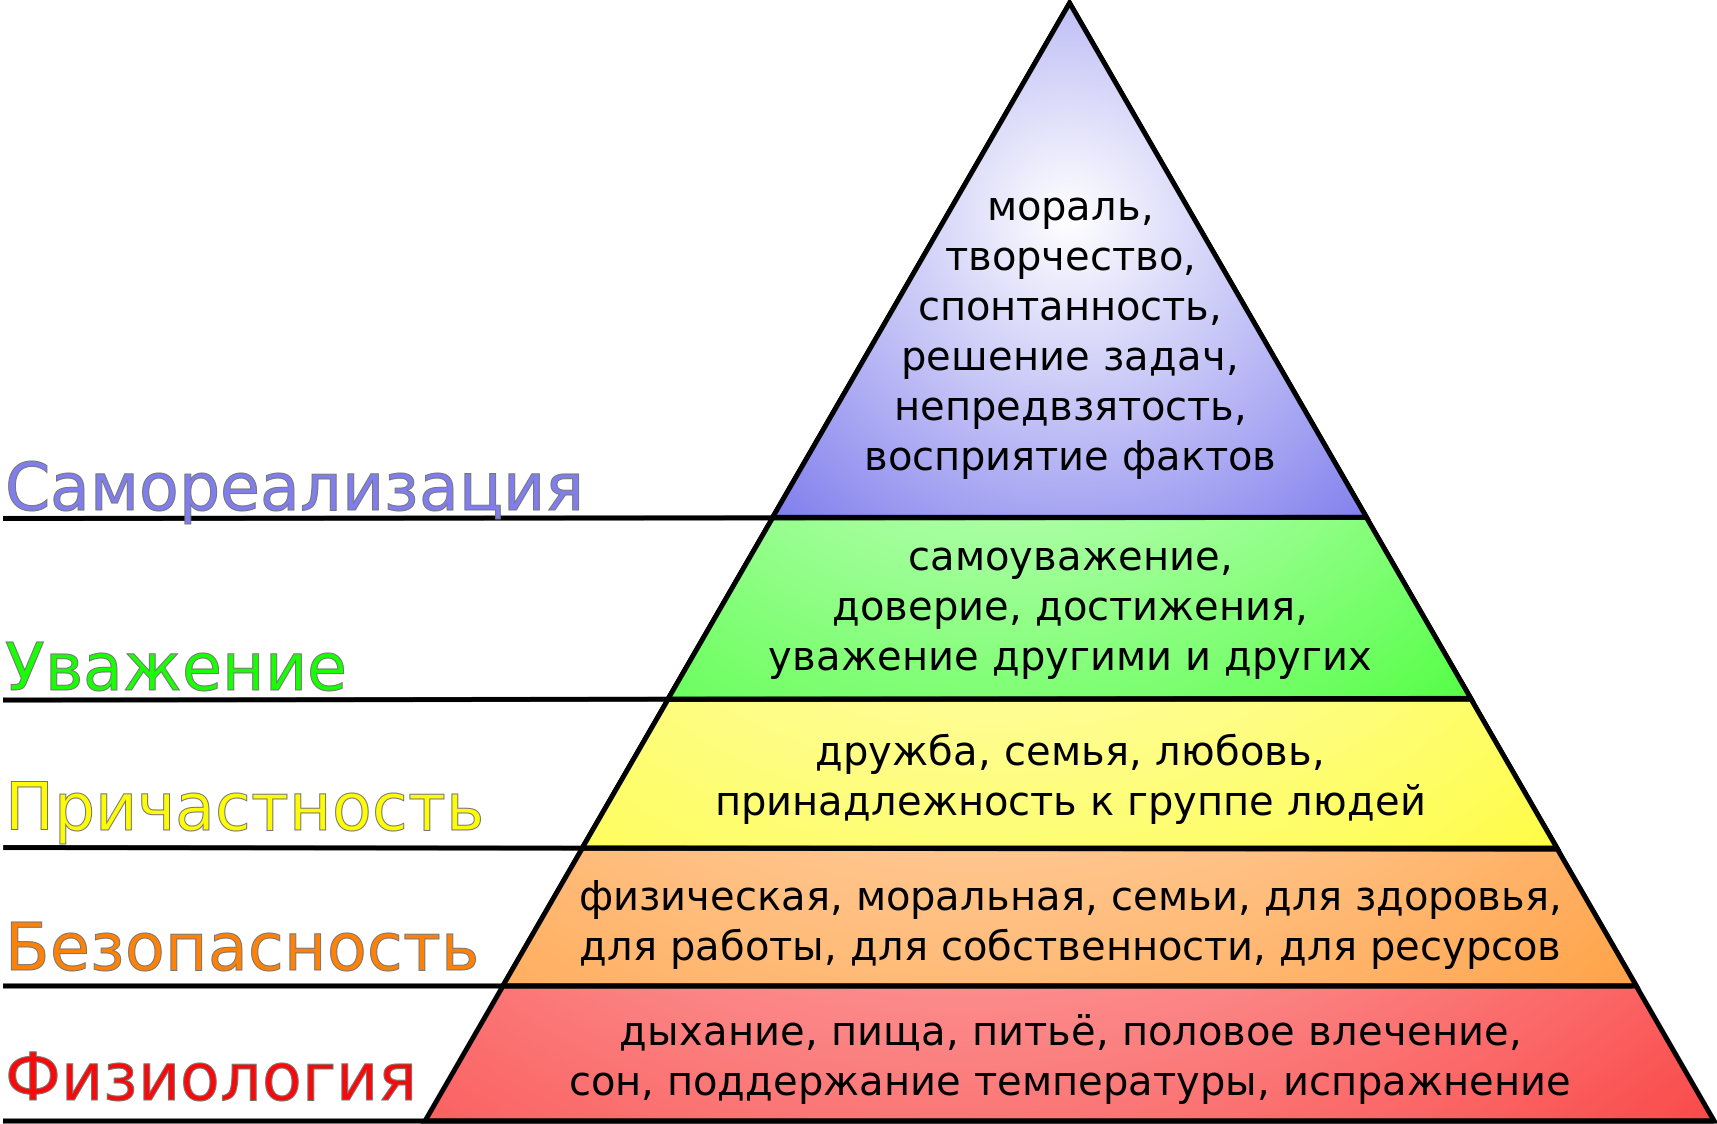 Потребности всегда. Пирамида Маслоу 7 уровней. Потребности семьи пирамида потребностей а Маслоу. Пирамида потребностей человека не Маслоу. Изобразите пирамиду потребностей а. Маслоу..